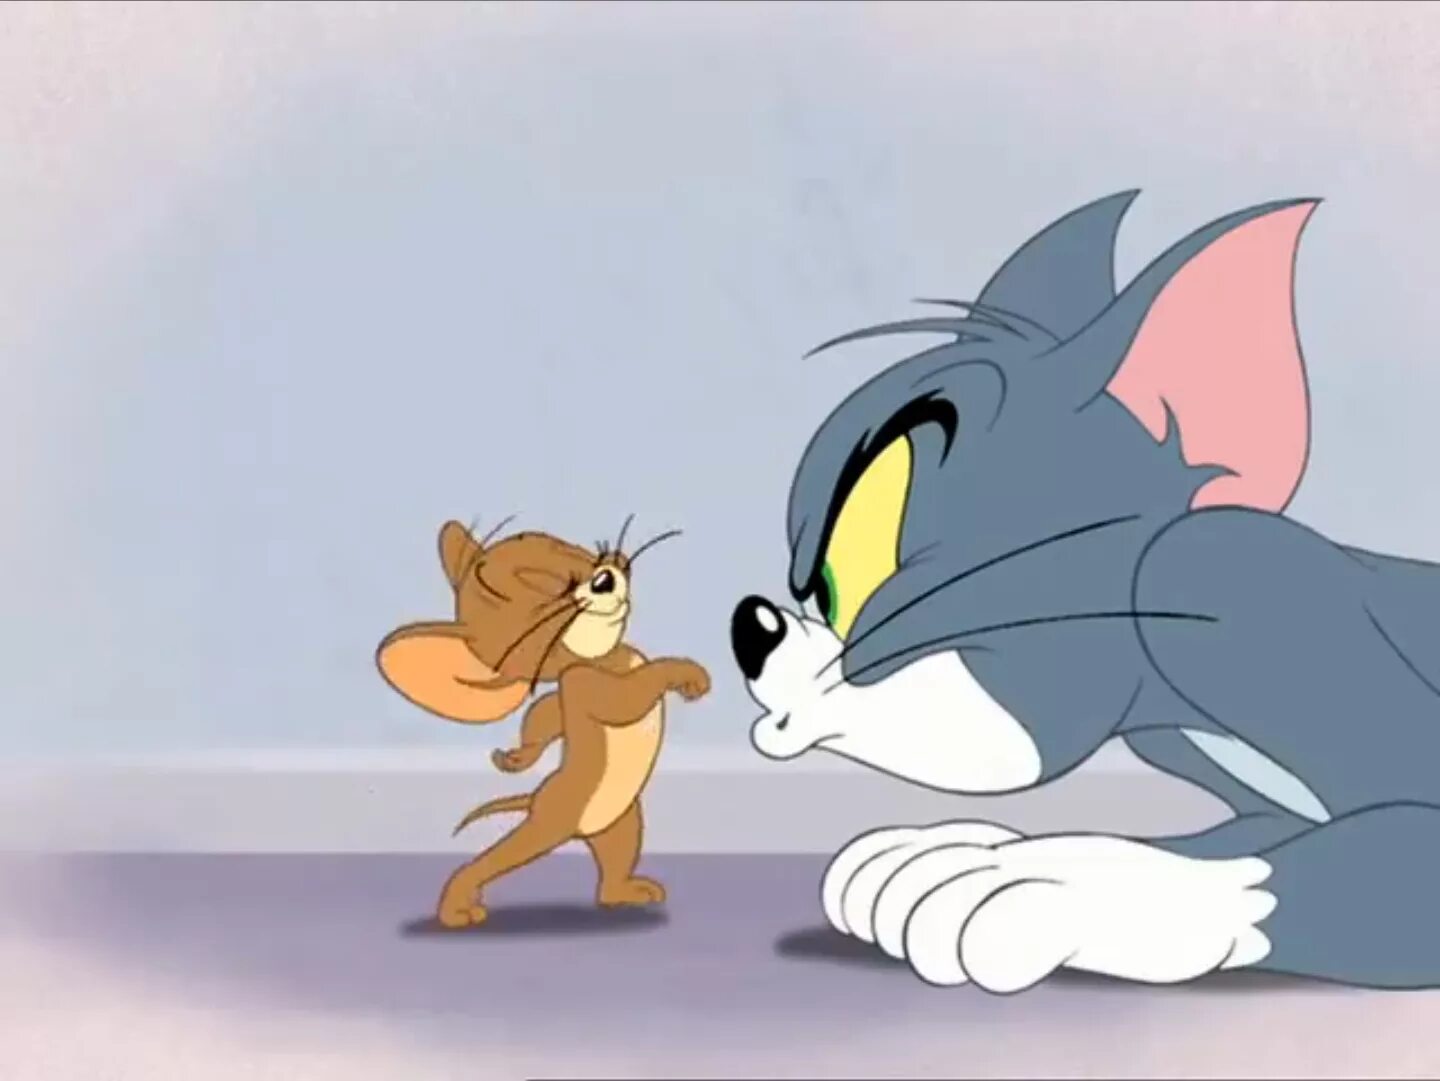 Том из тома и джерри. Том и Джерри Tom and Jerry. Том и Джерри Дисней. Том и Джерри (Tom and Jerry) 1940.